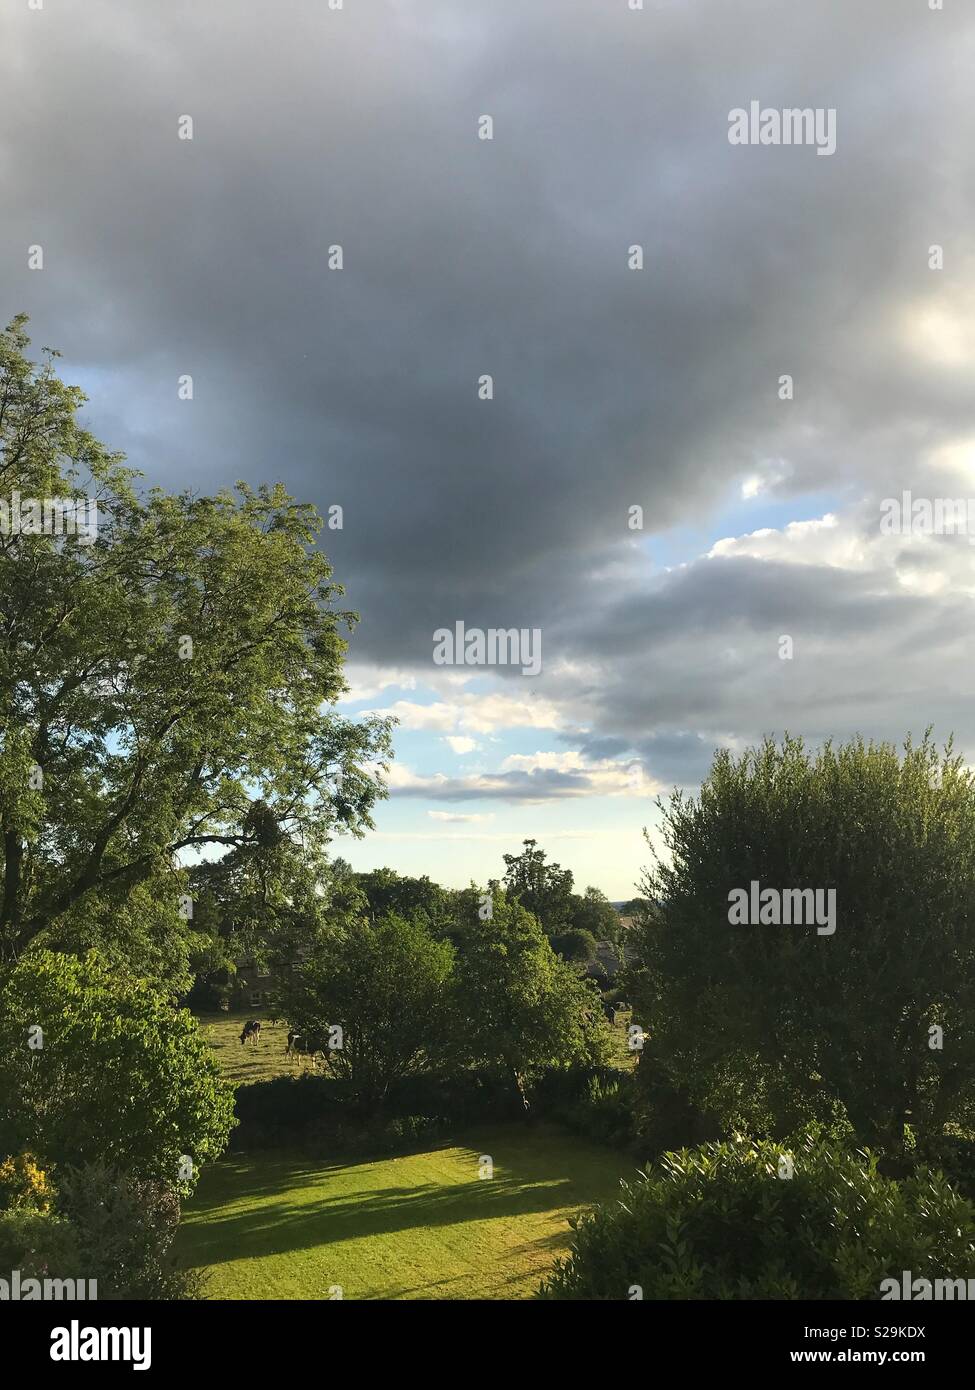 L'évolution des conditions météorologiques et de l'anglais un ciel gris. Un point de vue d'un pays dans le jardin en début de soirée avec des nuages dans un ciel changeant de nuages menaçants Banque D'Images